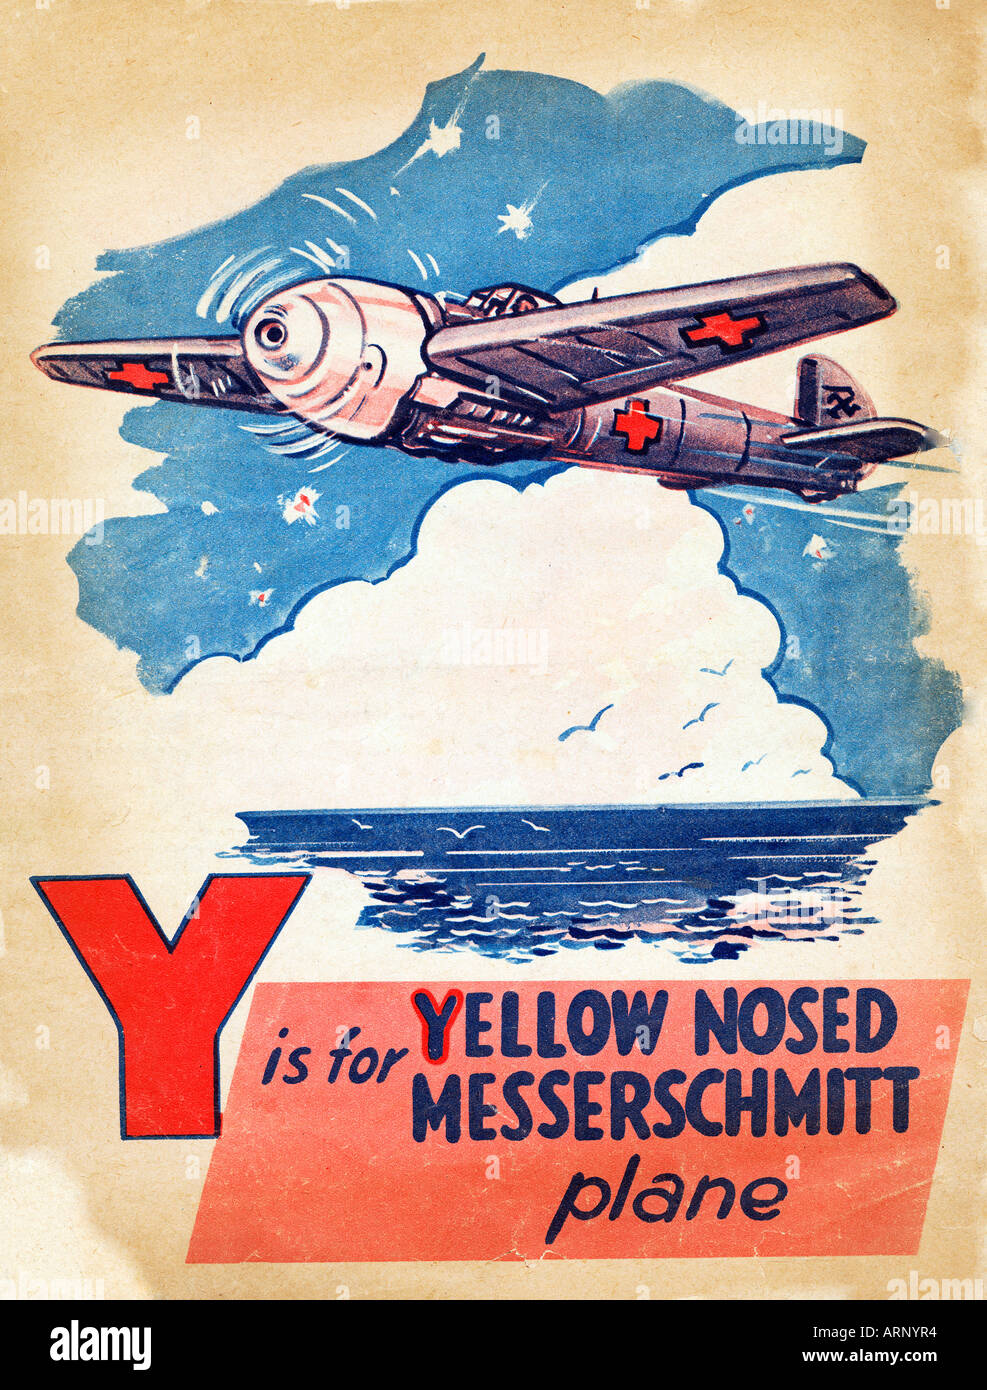 Bataille d'Angleterre y est pour les enfants britanniques Messerschmitt nez jaune Alphabet book de WW II Banque D'Images